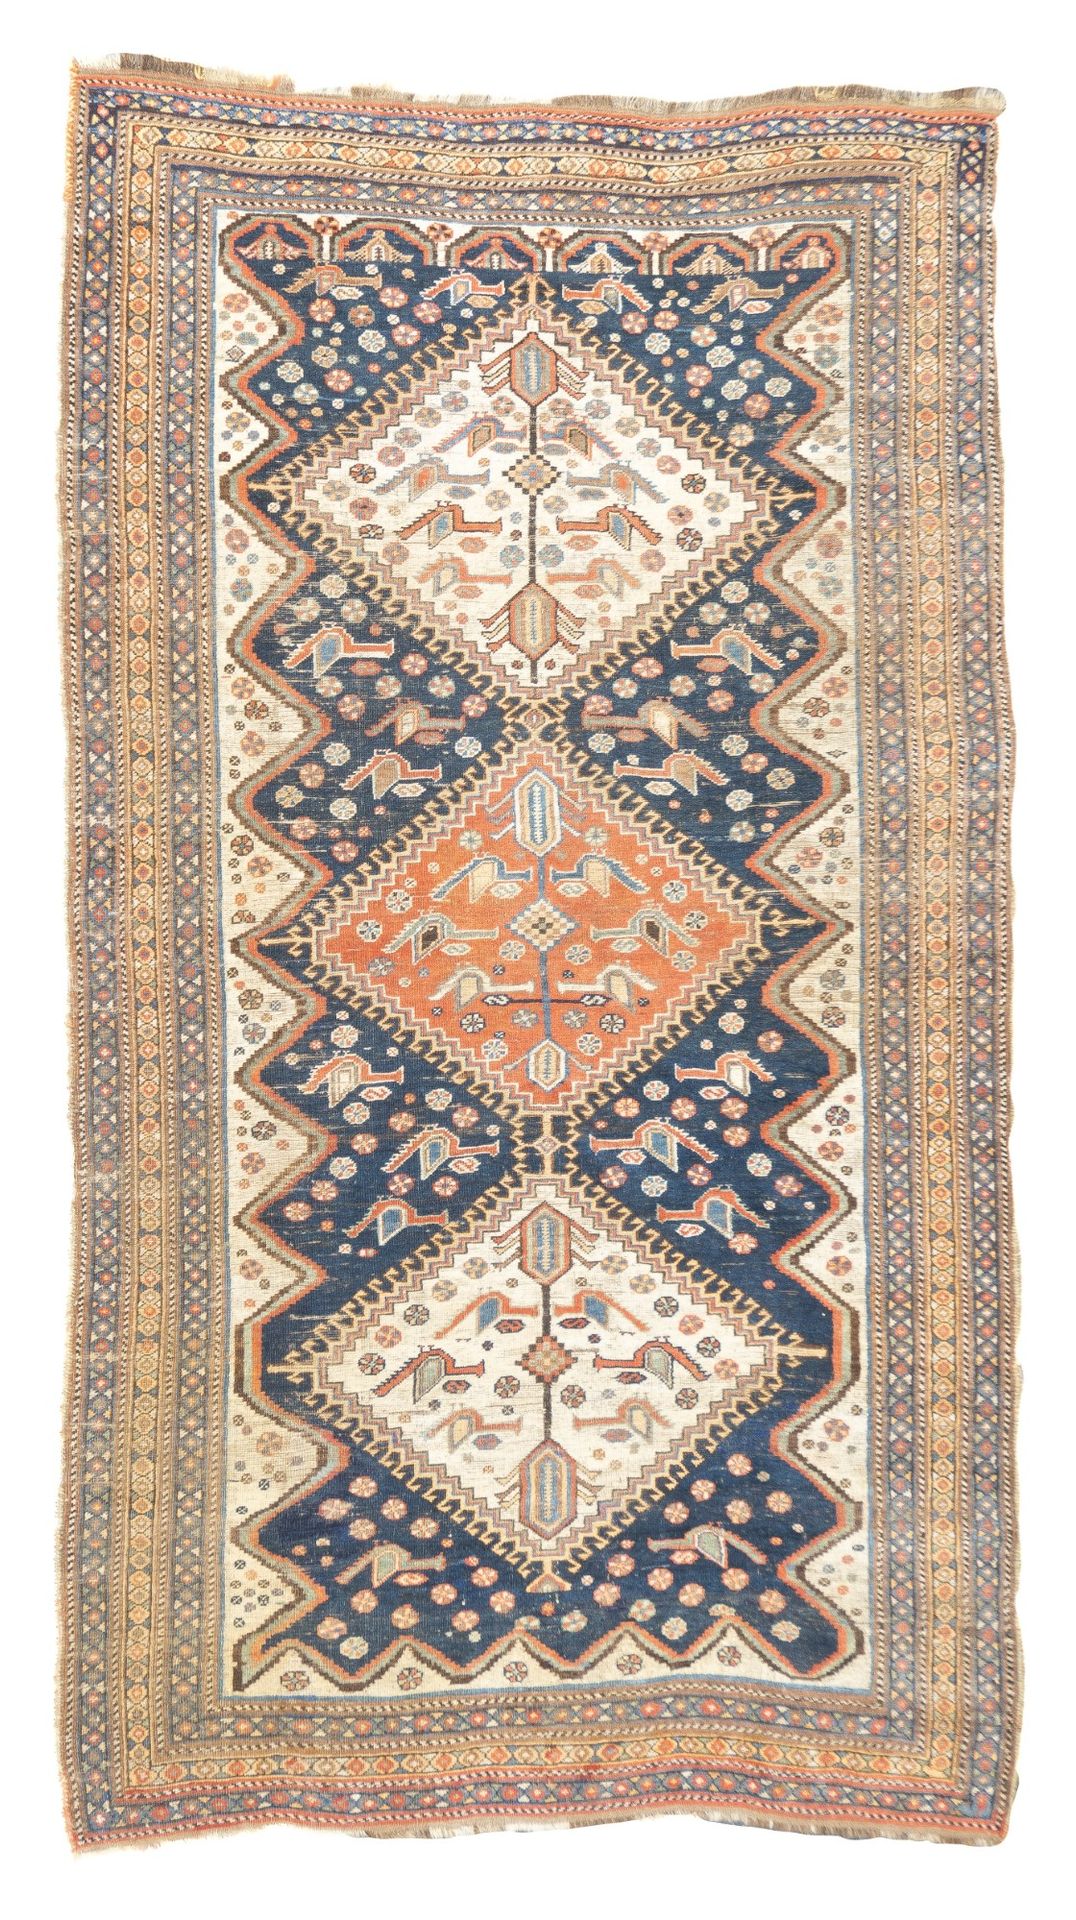 Null Antique Qashqai Rug, 4'5" x 7'11" ( 1.35 x 2.41 M )